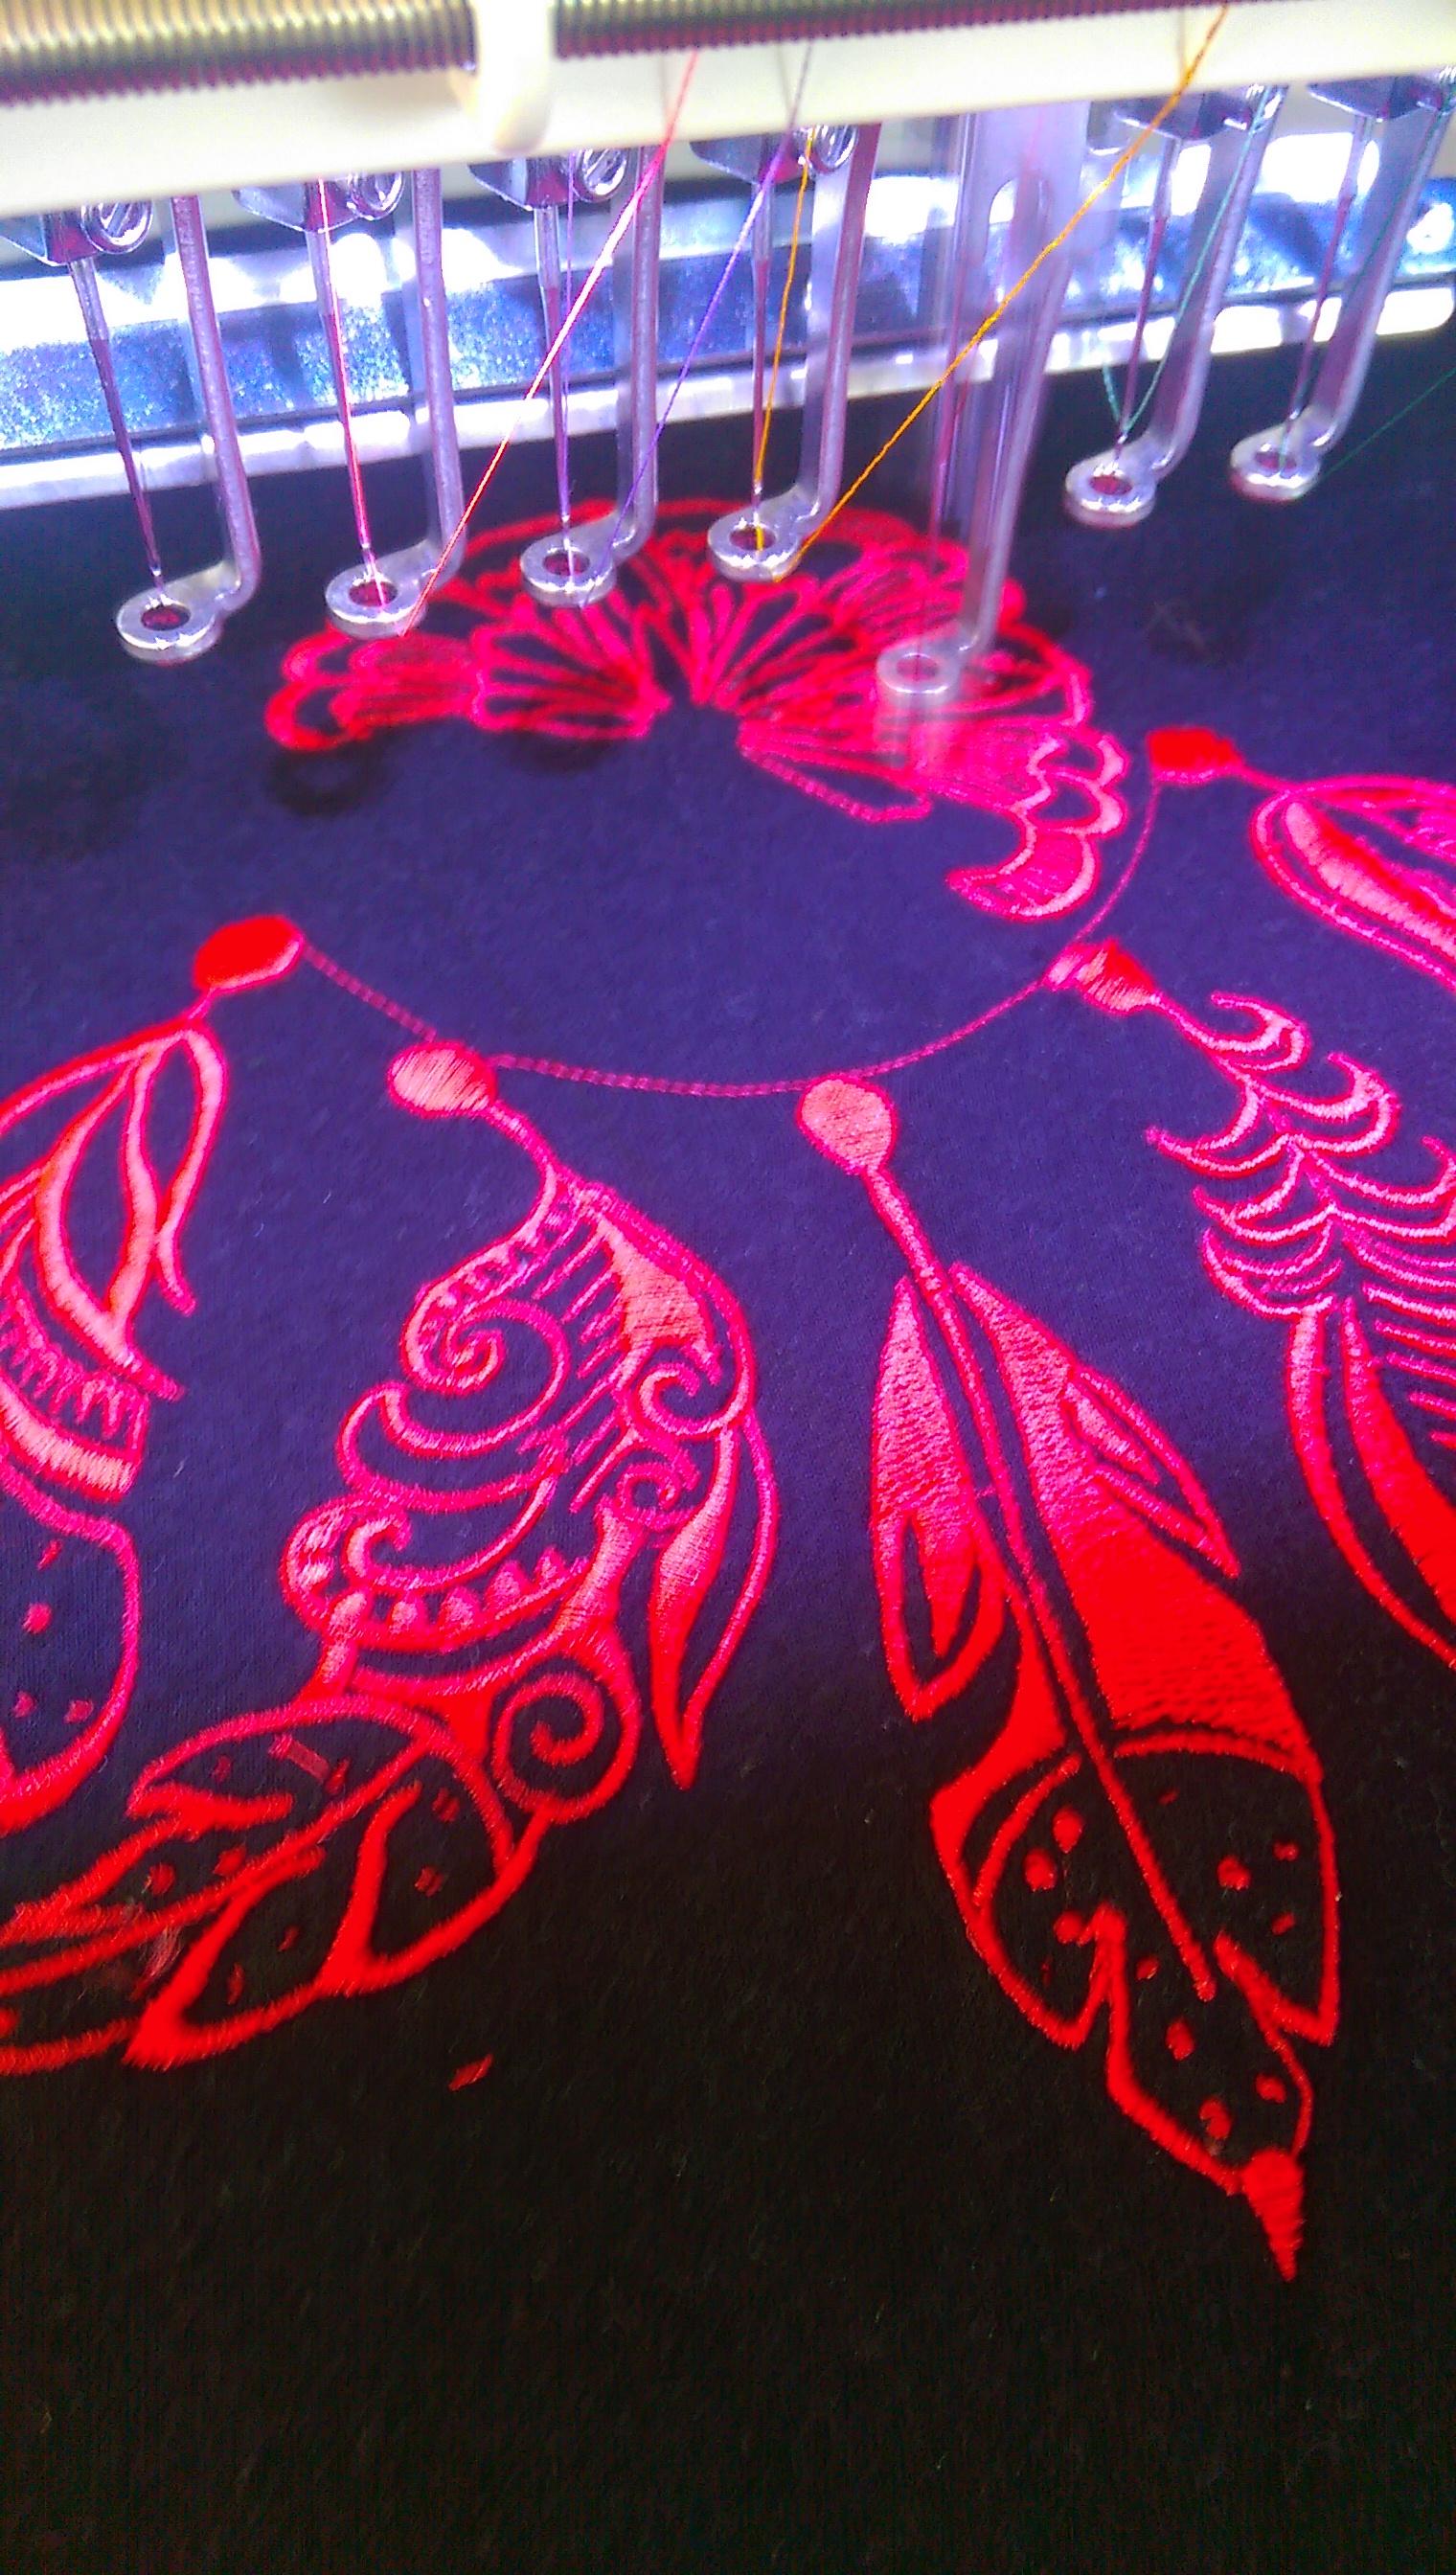 Dreamcatcher embroidery design in work